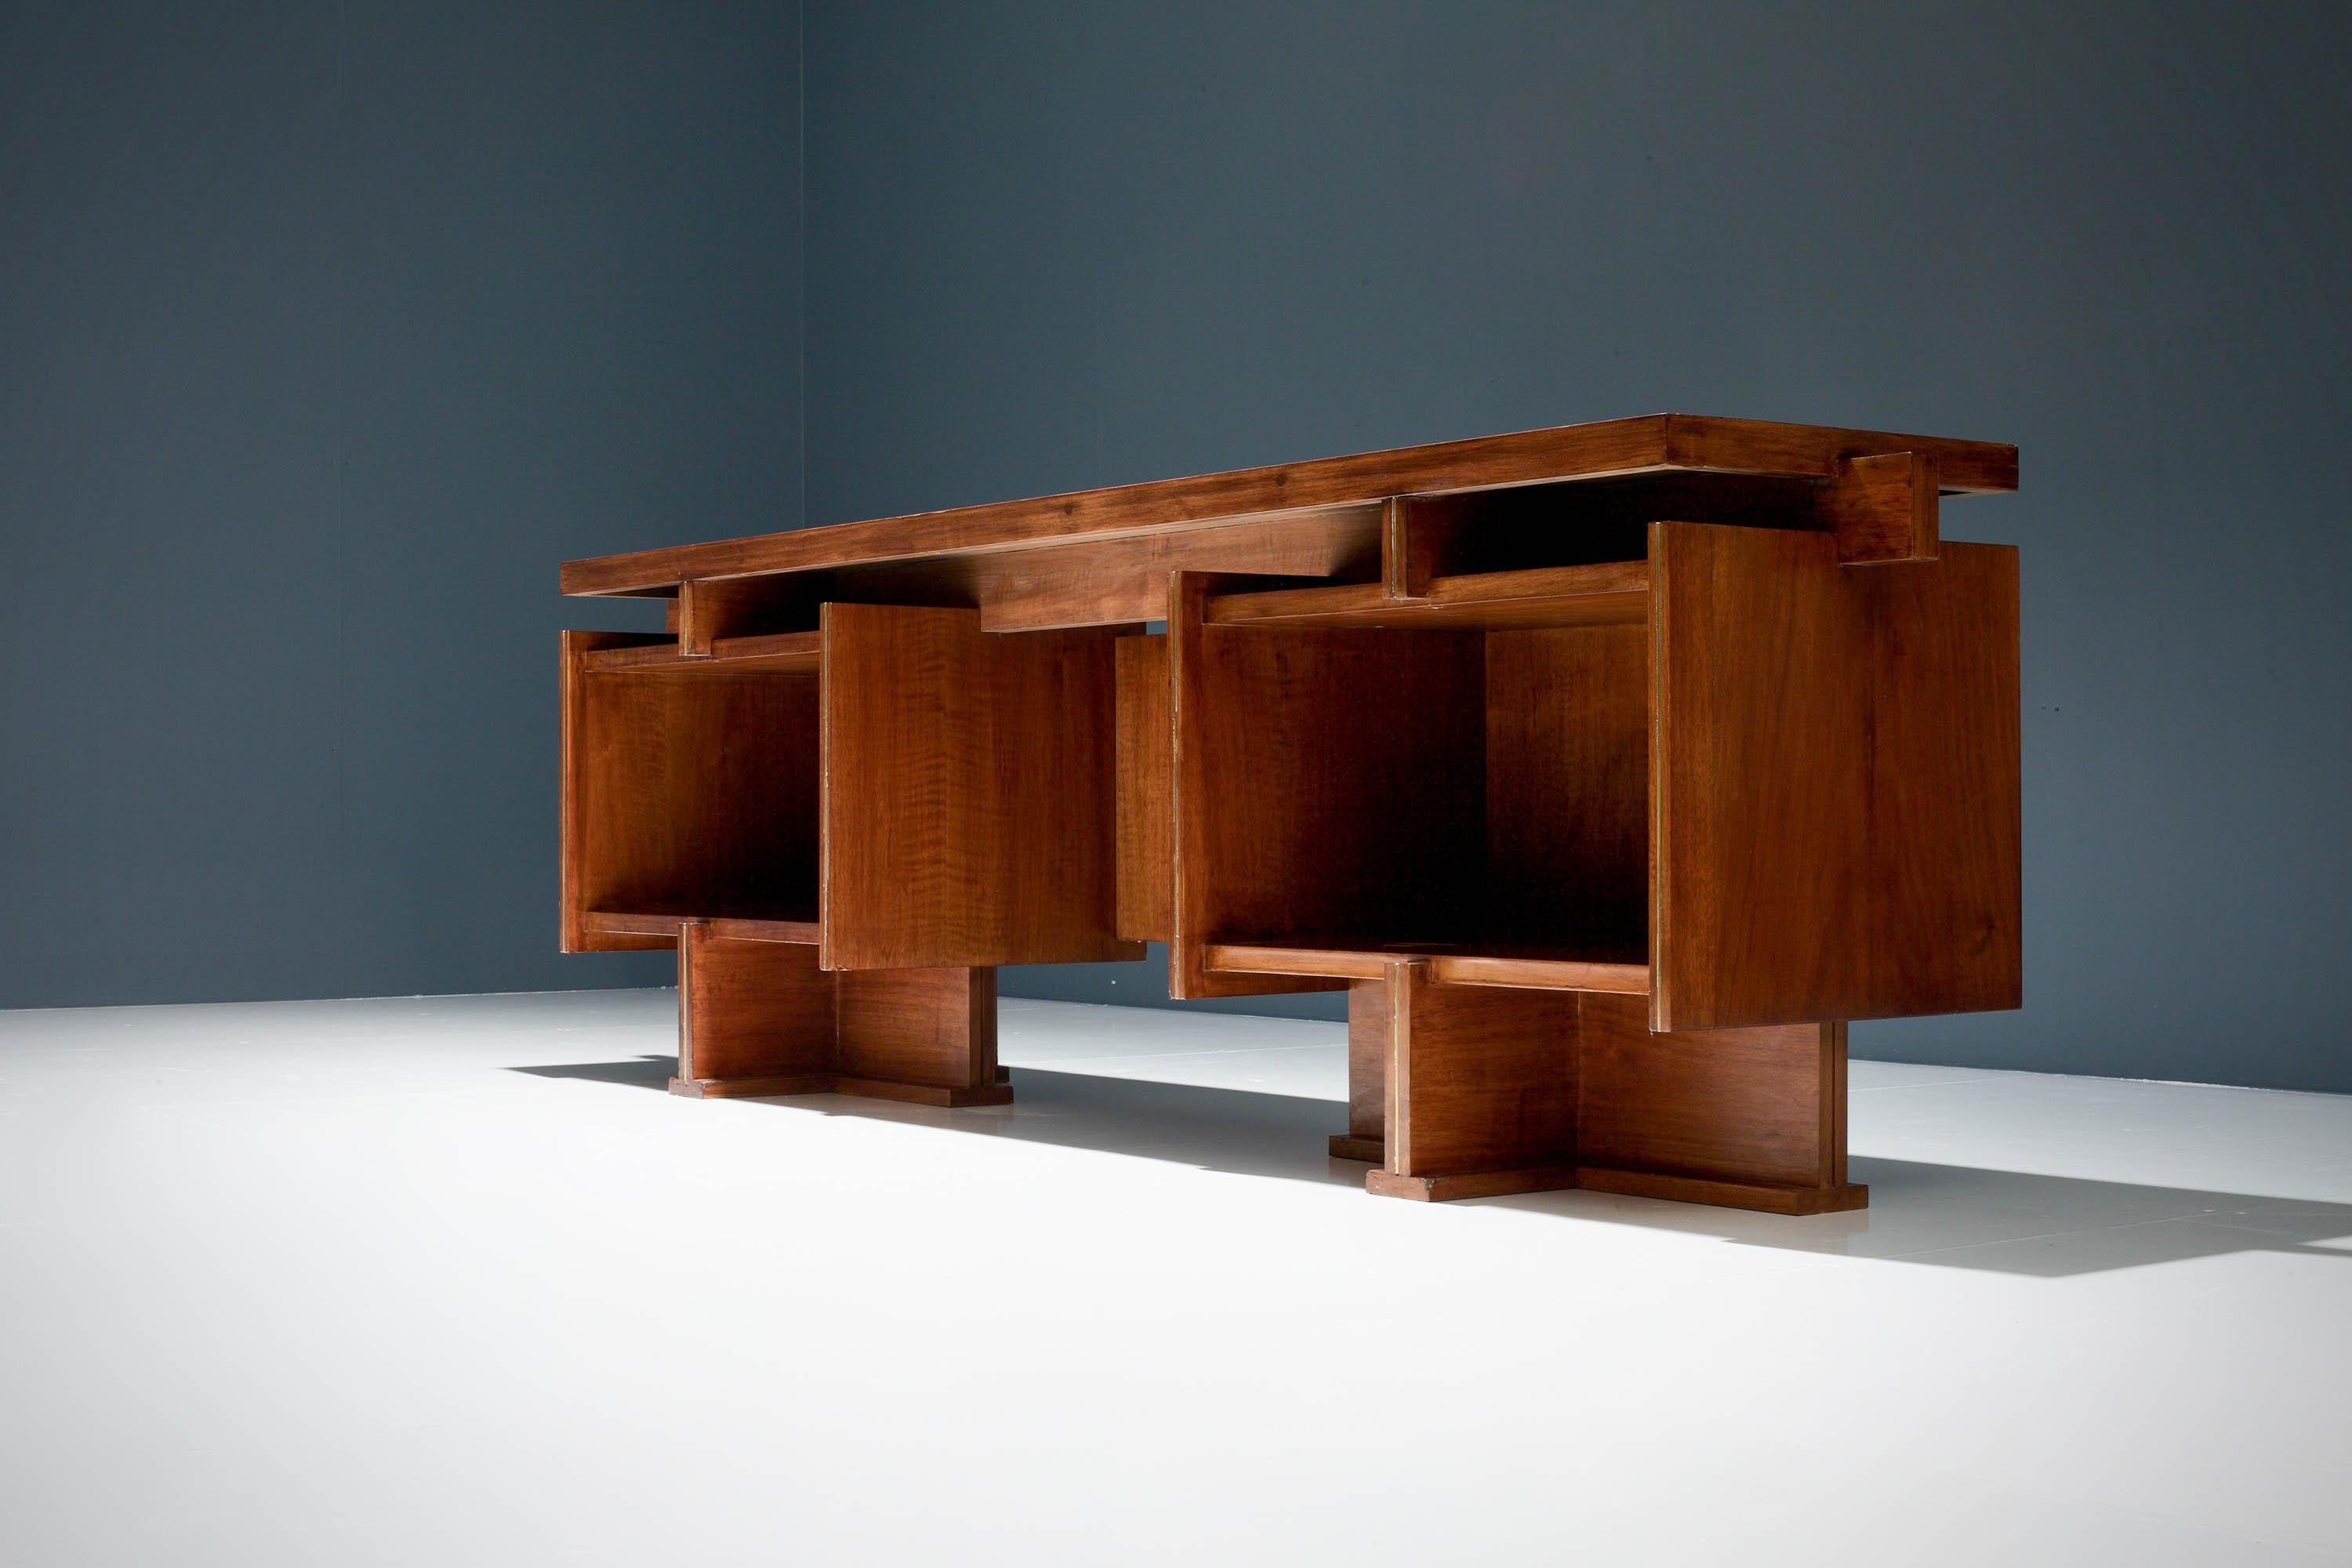 Dieser geometrische Schreibtisch hat eine elegante Symmetrie. Dieser besteht aus zwei großen, rechteckigen Ablagefächern und vier kleineren Fächern darüber. Zwischen den Fächern befindet sich ein offener Raum, der für einen Stuhl vorgesehen ist.